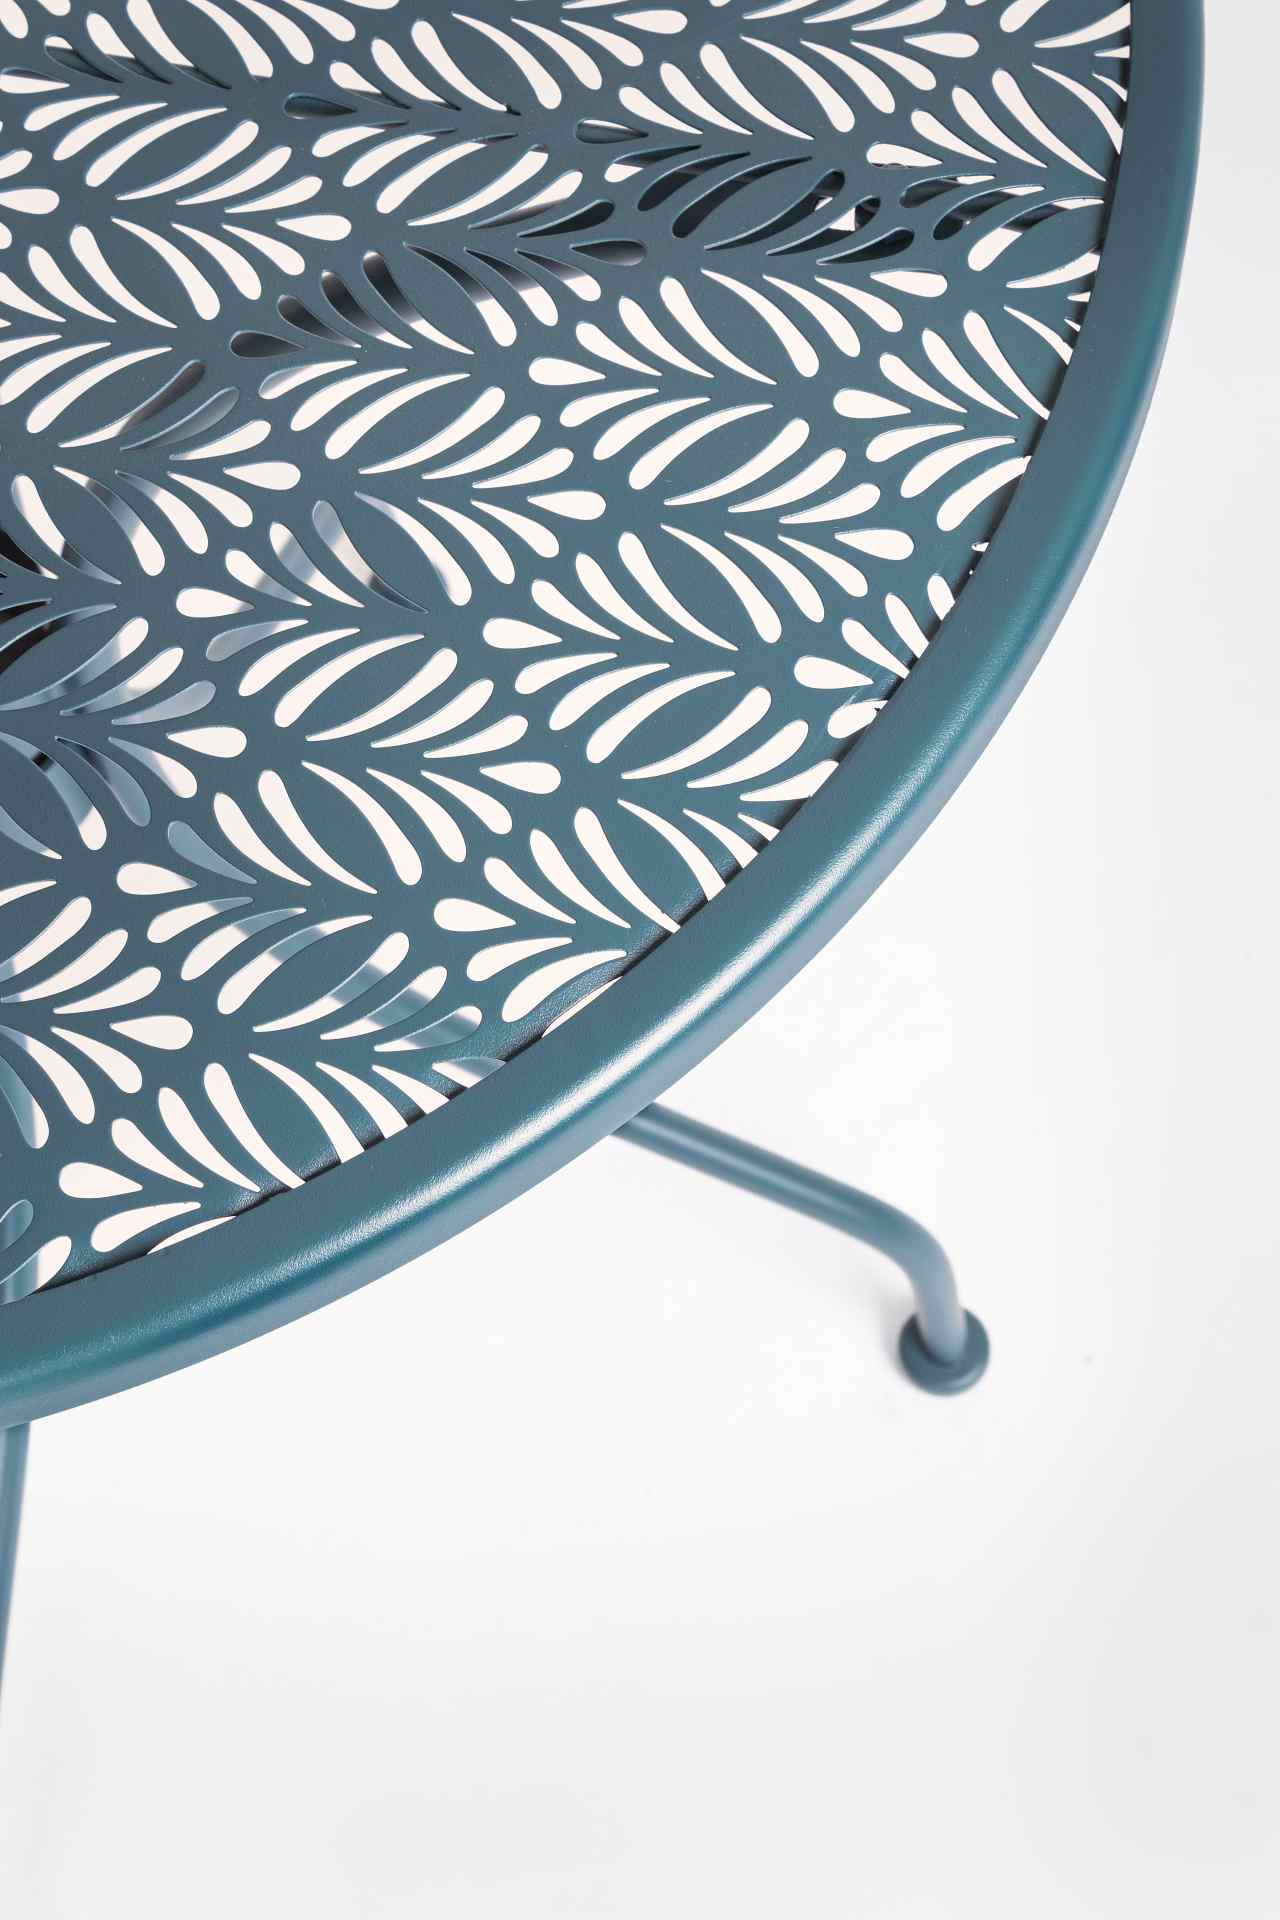 Der Gartentisch Lizette überzeugt mit seinem klassischen Design. Gefertigt wurde er aus Aluminium, welches einen blauen Farbton besitzt. Das Gestell ist aus auch Aluminium und hat eine blaue Farbe. Der Tisch verfügt über einen Durchmesser von 60 cm und is